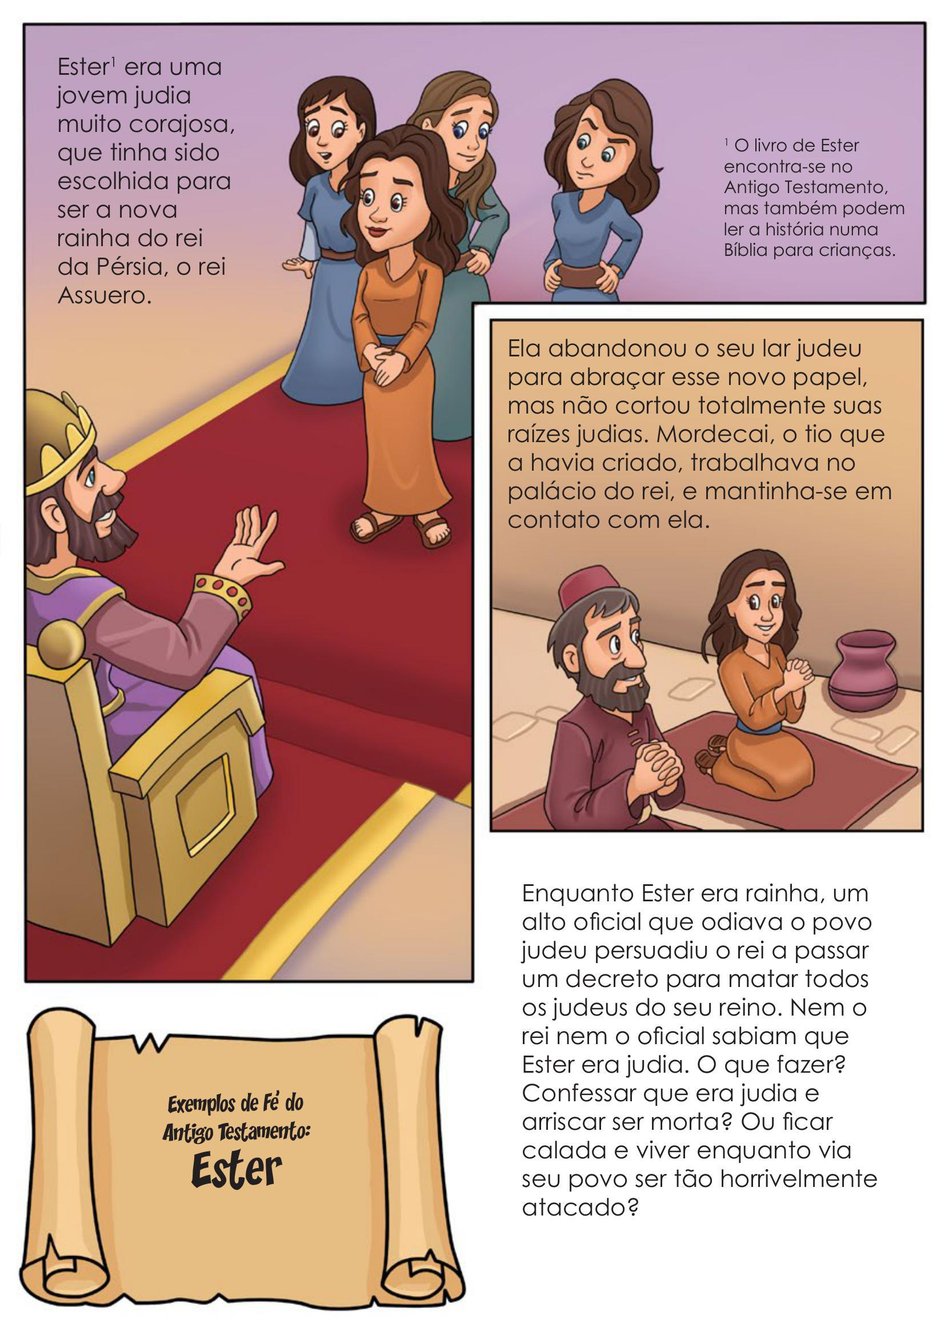 Exemplos de Fé do Antigo Testamento: Joquebede e a Filha Miriã